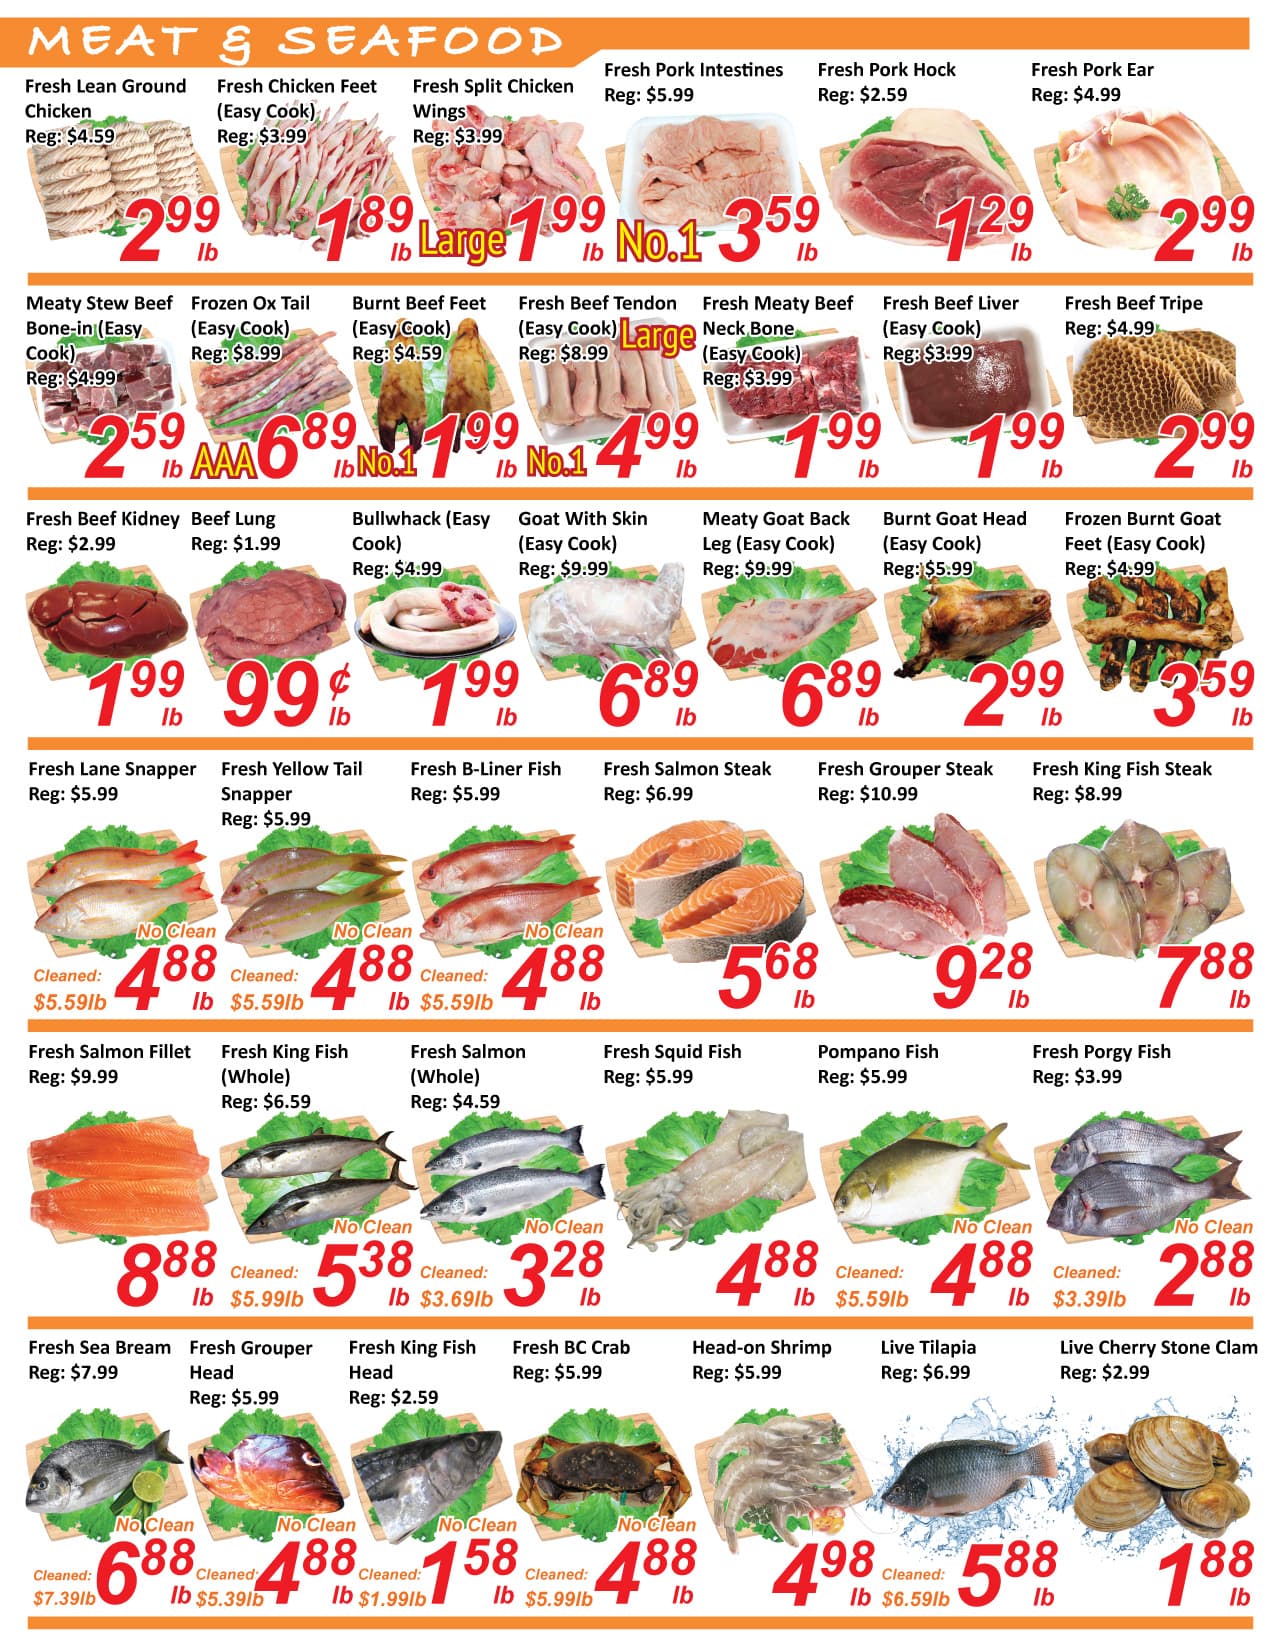 Seasons Foodmart - Brampton - Weekly Flyer Specials - Page 2